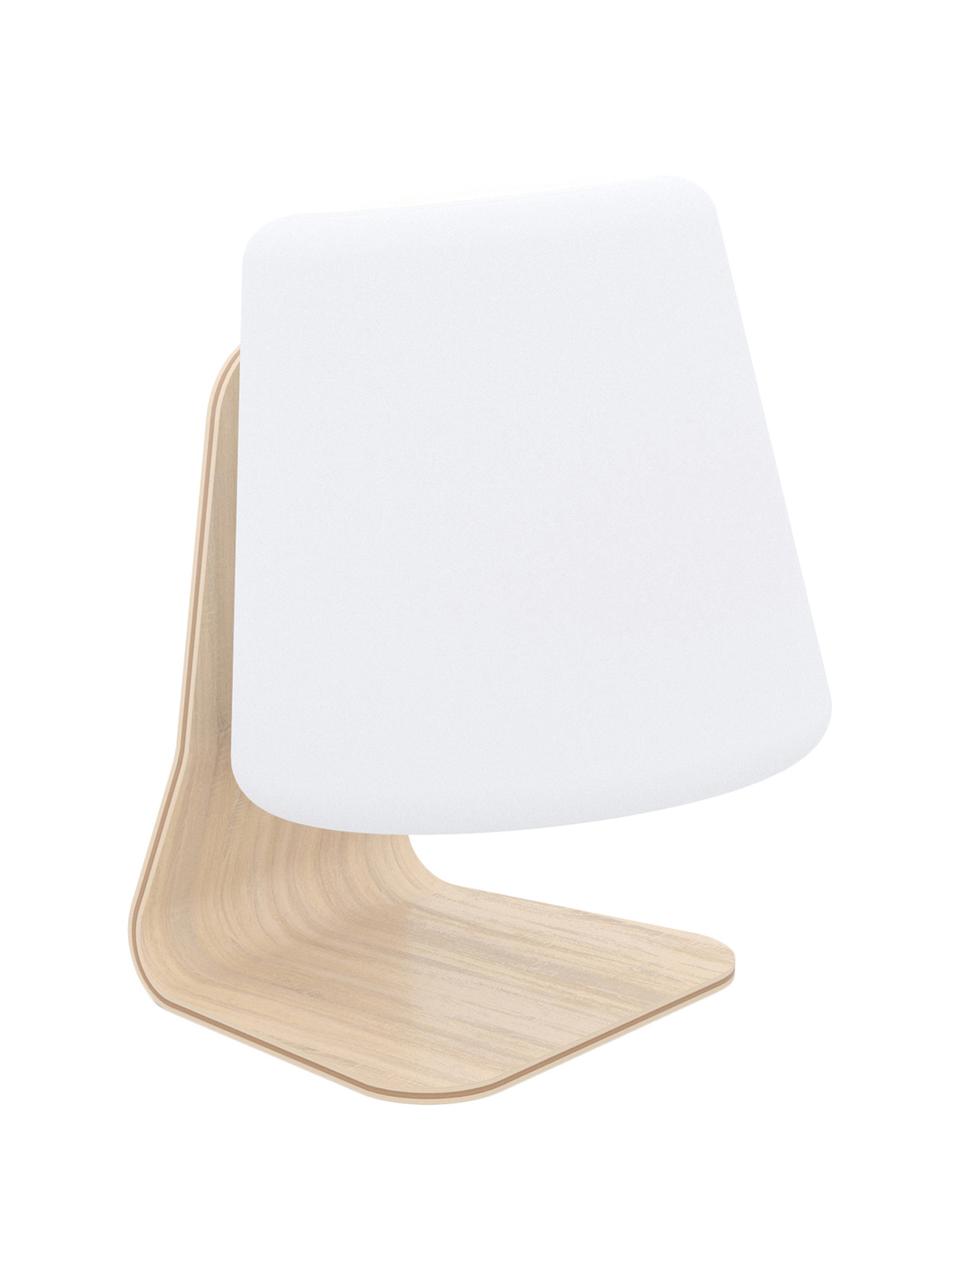 Mobiele outdoor LED lamp Table, Lampenkap: kunststof, Lampvoet: iepenhout met berkenhoutf, Wit, lichtbruin, 22 x 29 cm